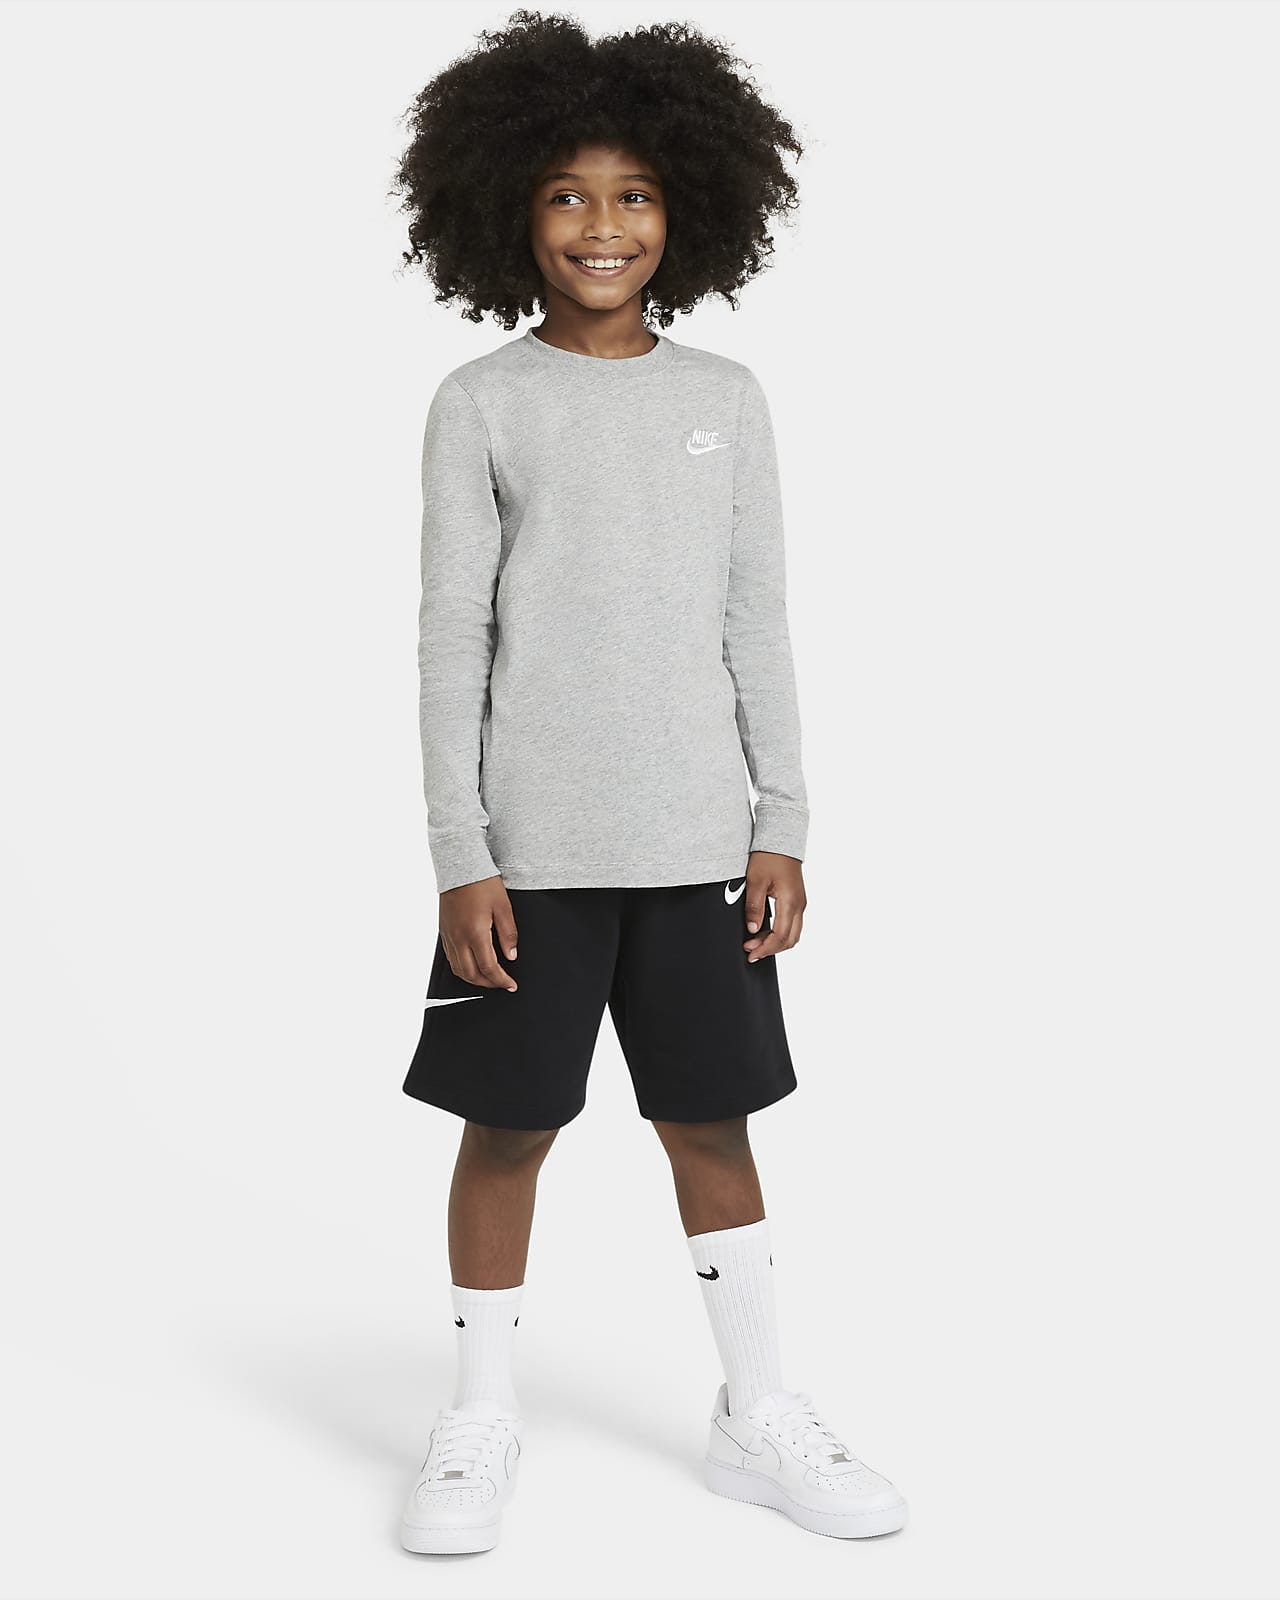 Nike Sportswear Older Kids' (Boys') Long-Sleeve T-Shirt. Nike GB